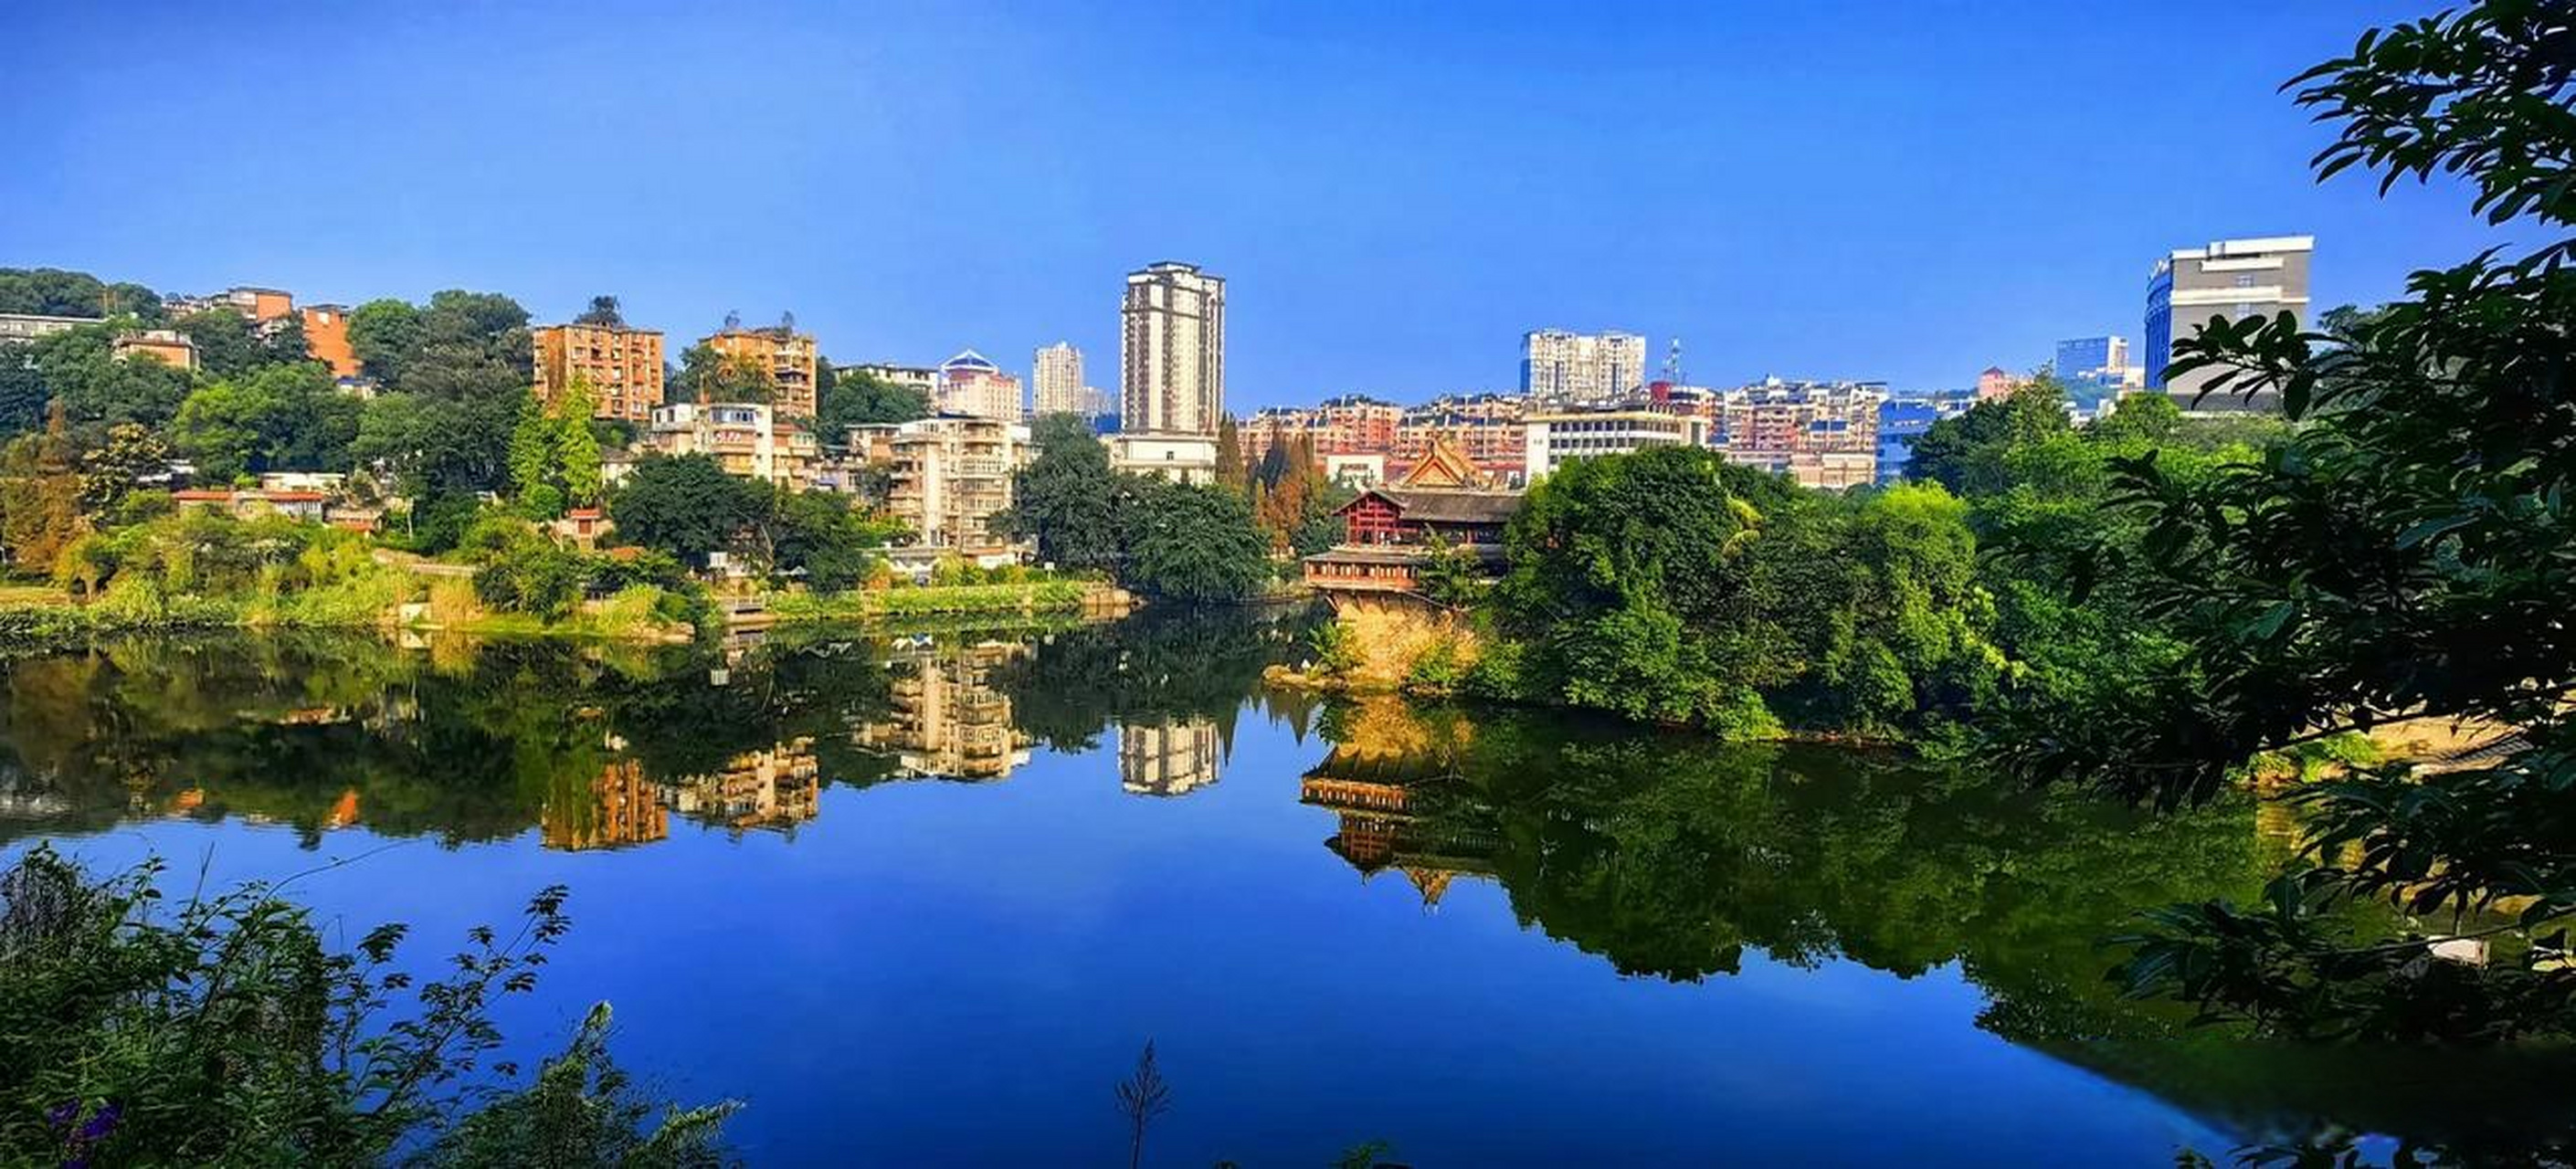 自贡风景图片高清图片